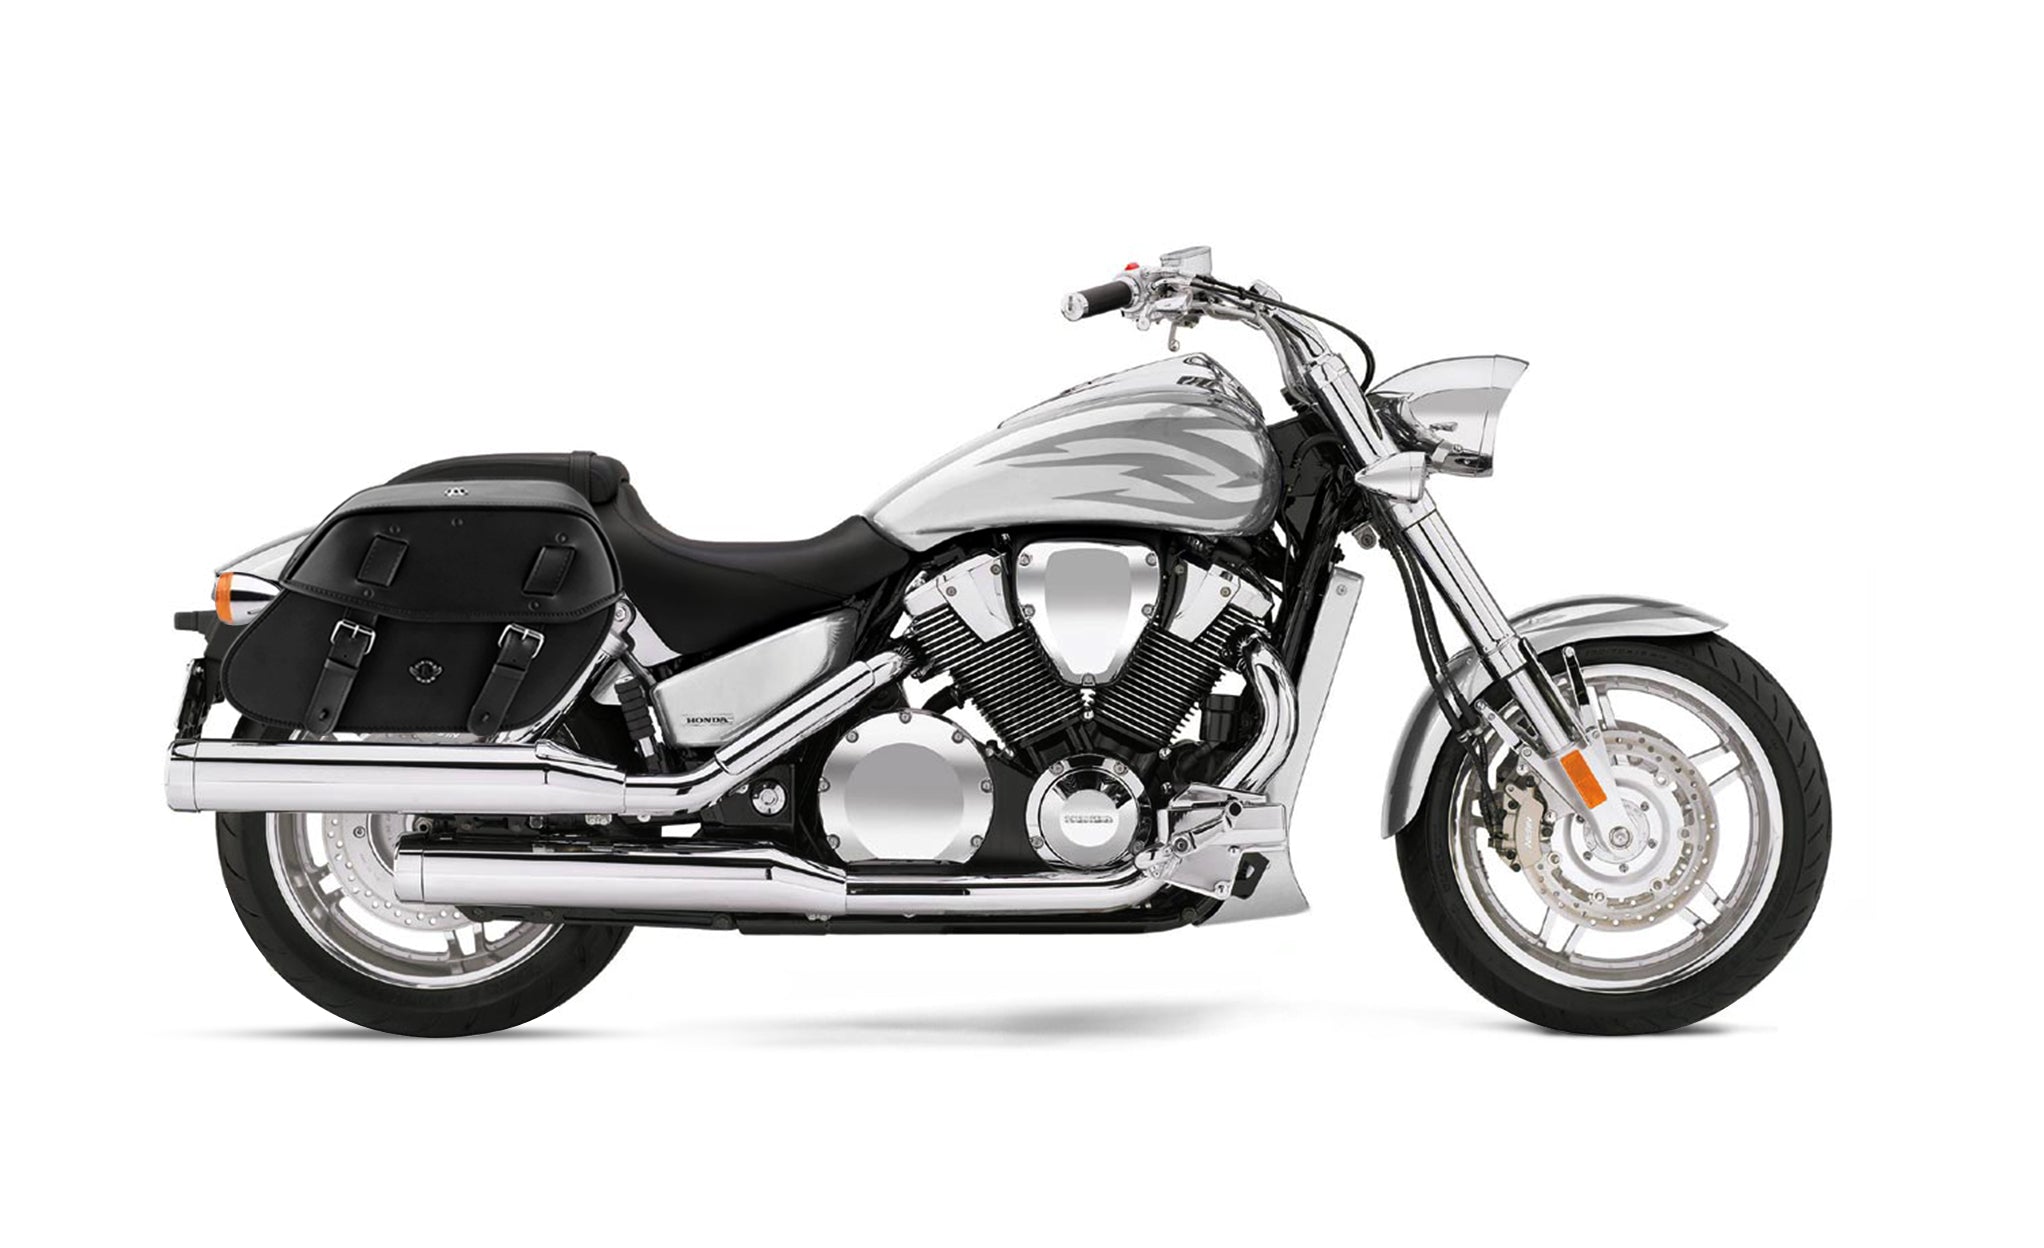 Viking Odin Large Honda Vtx 1800 F Leather Motorcycle Saddlebags on Bike Photo @expand